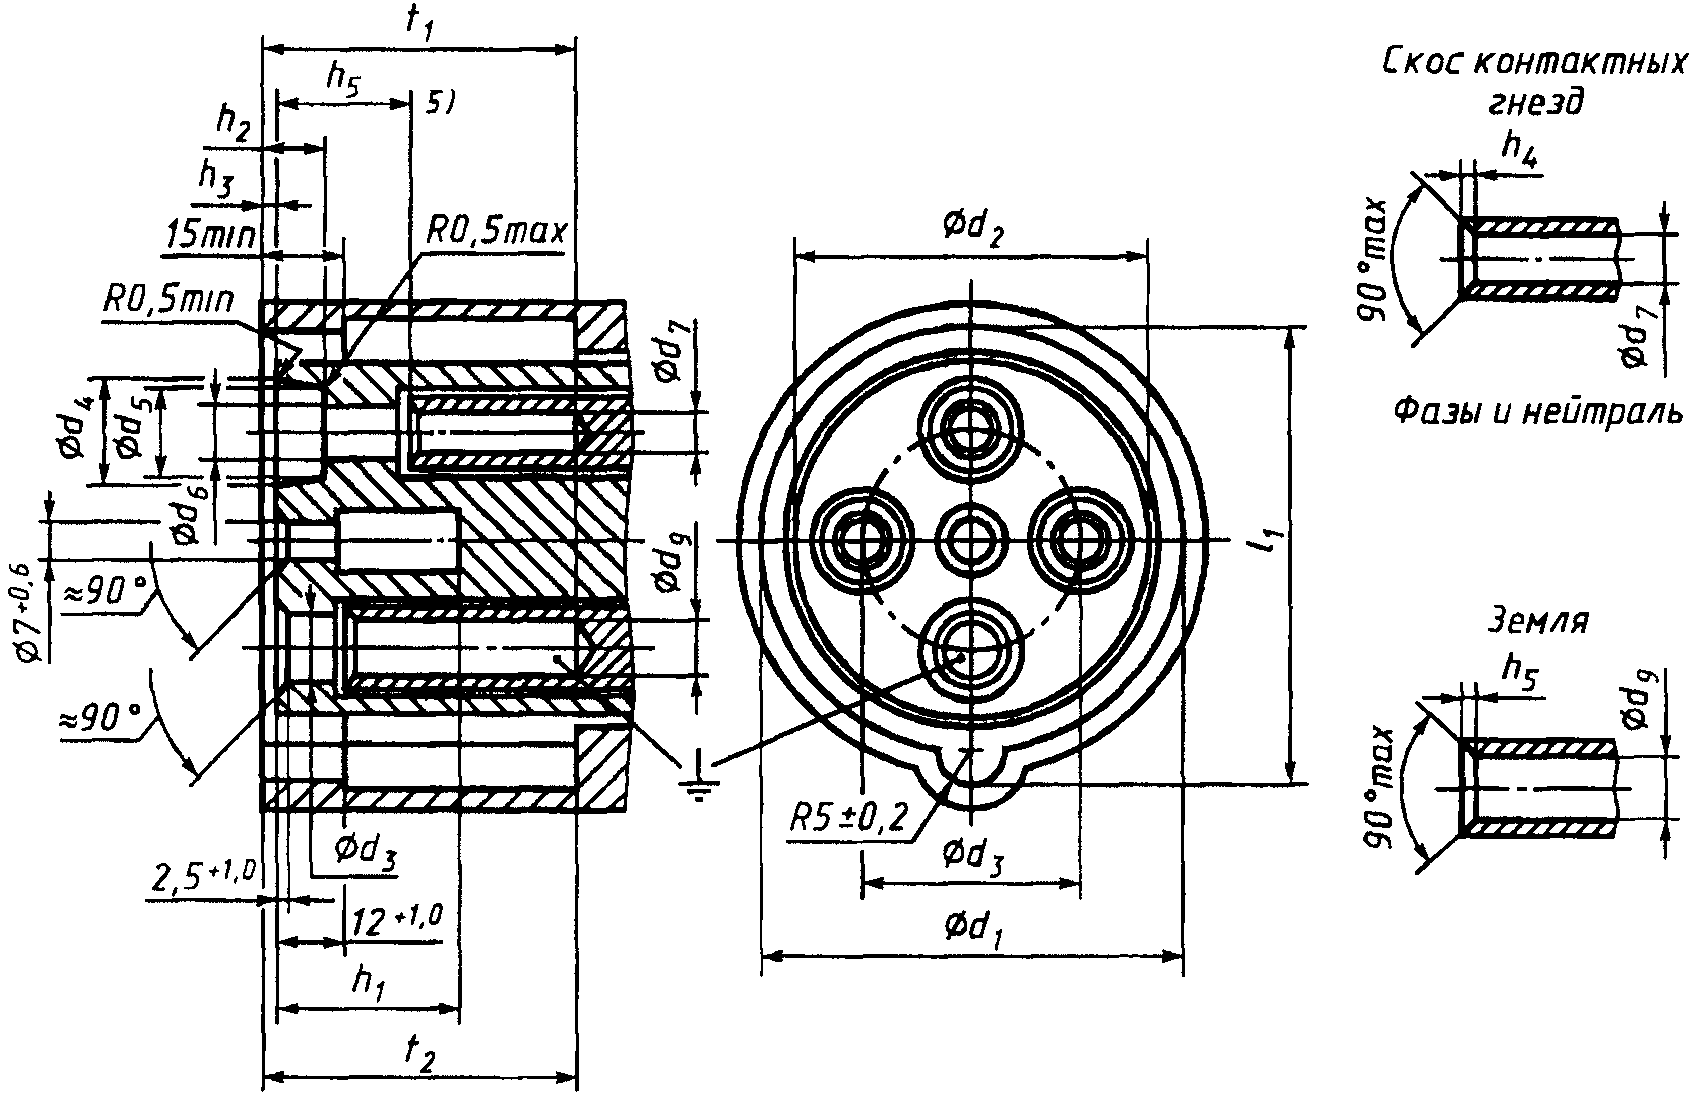 Схема подключения трехфазной розетки сси-125